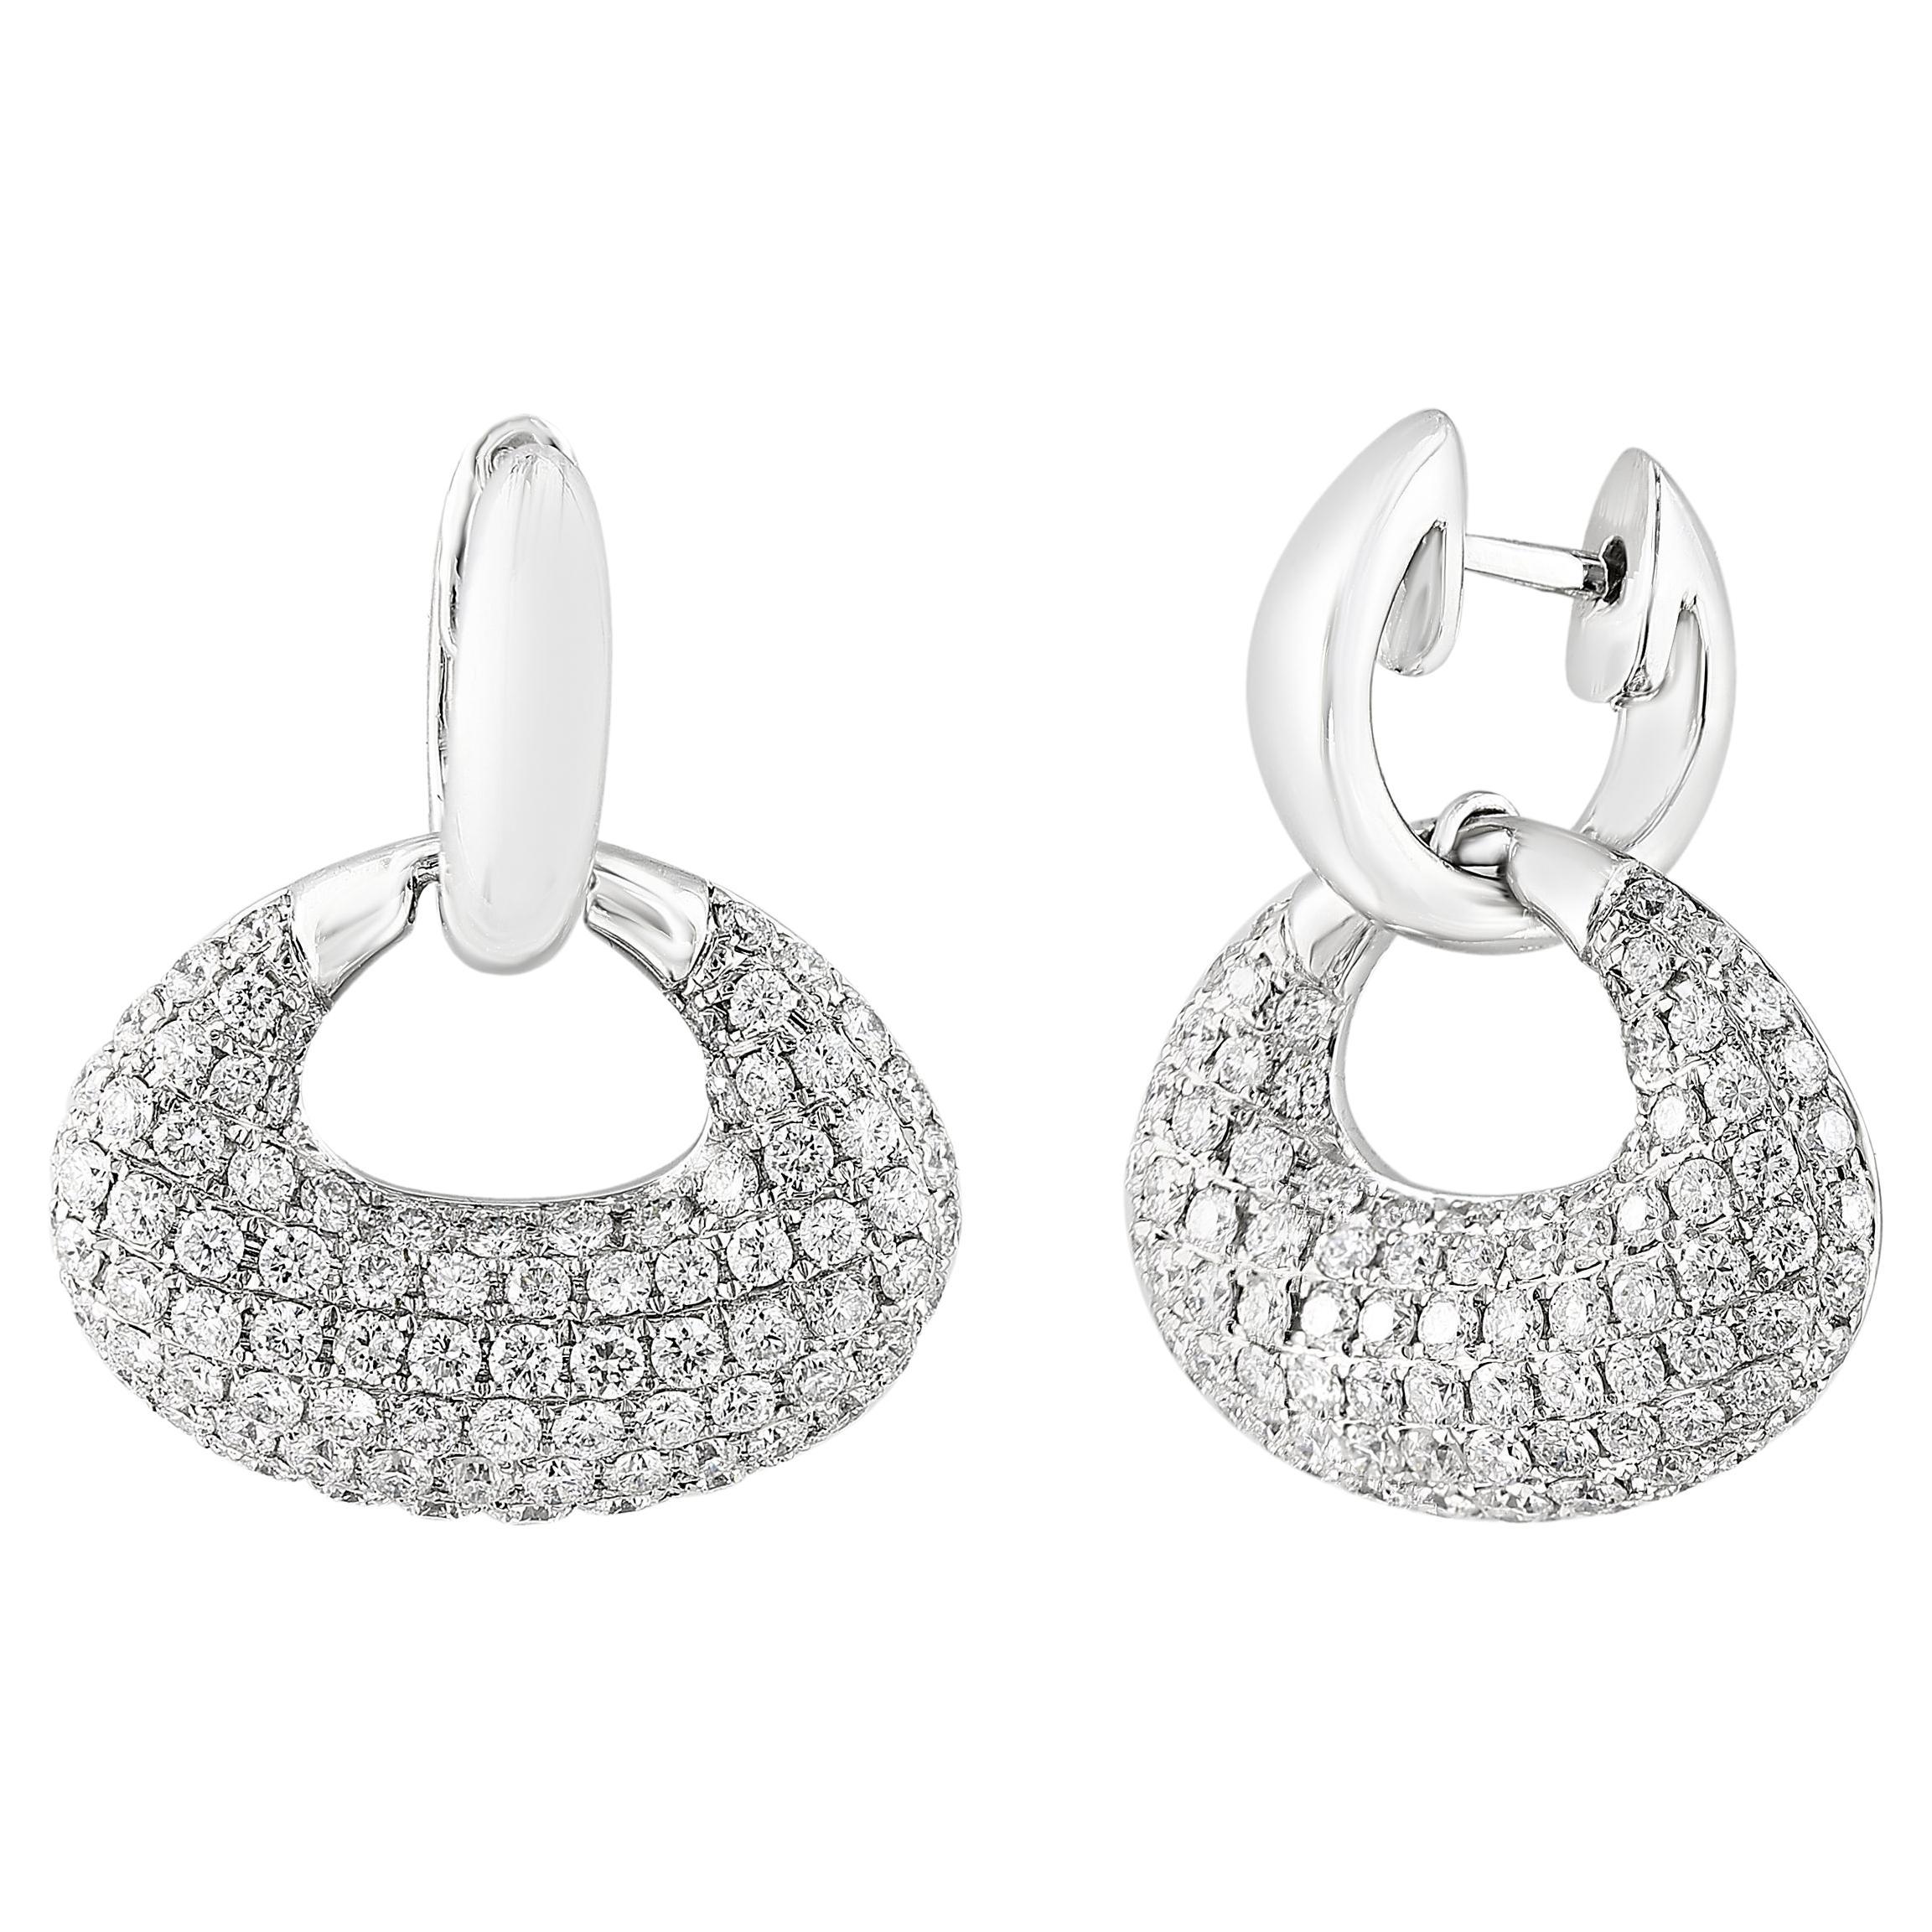 2.49 Carat Brilliant Cut Diamond Drop Earrings in 18K White Gold For Sale